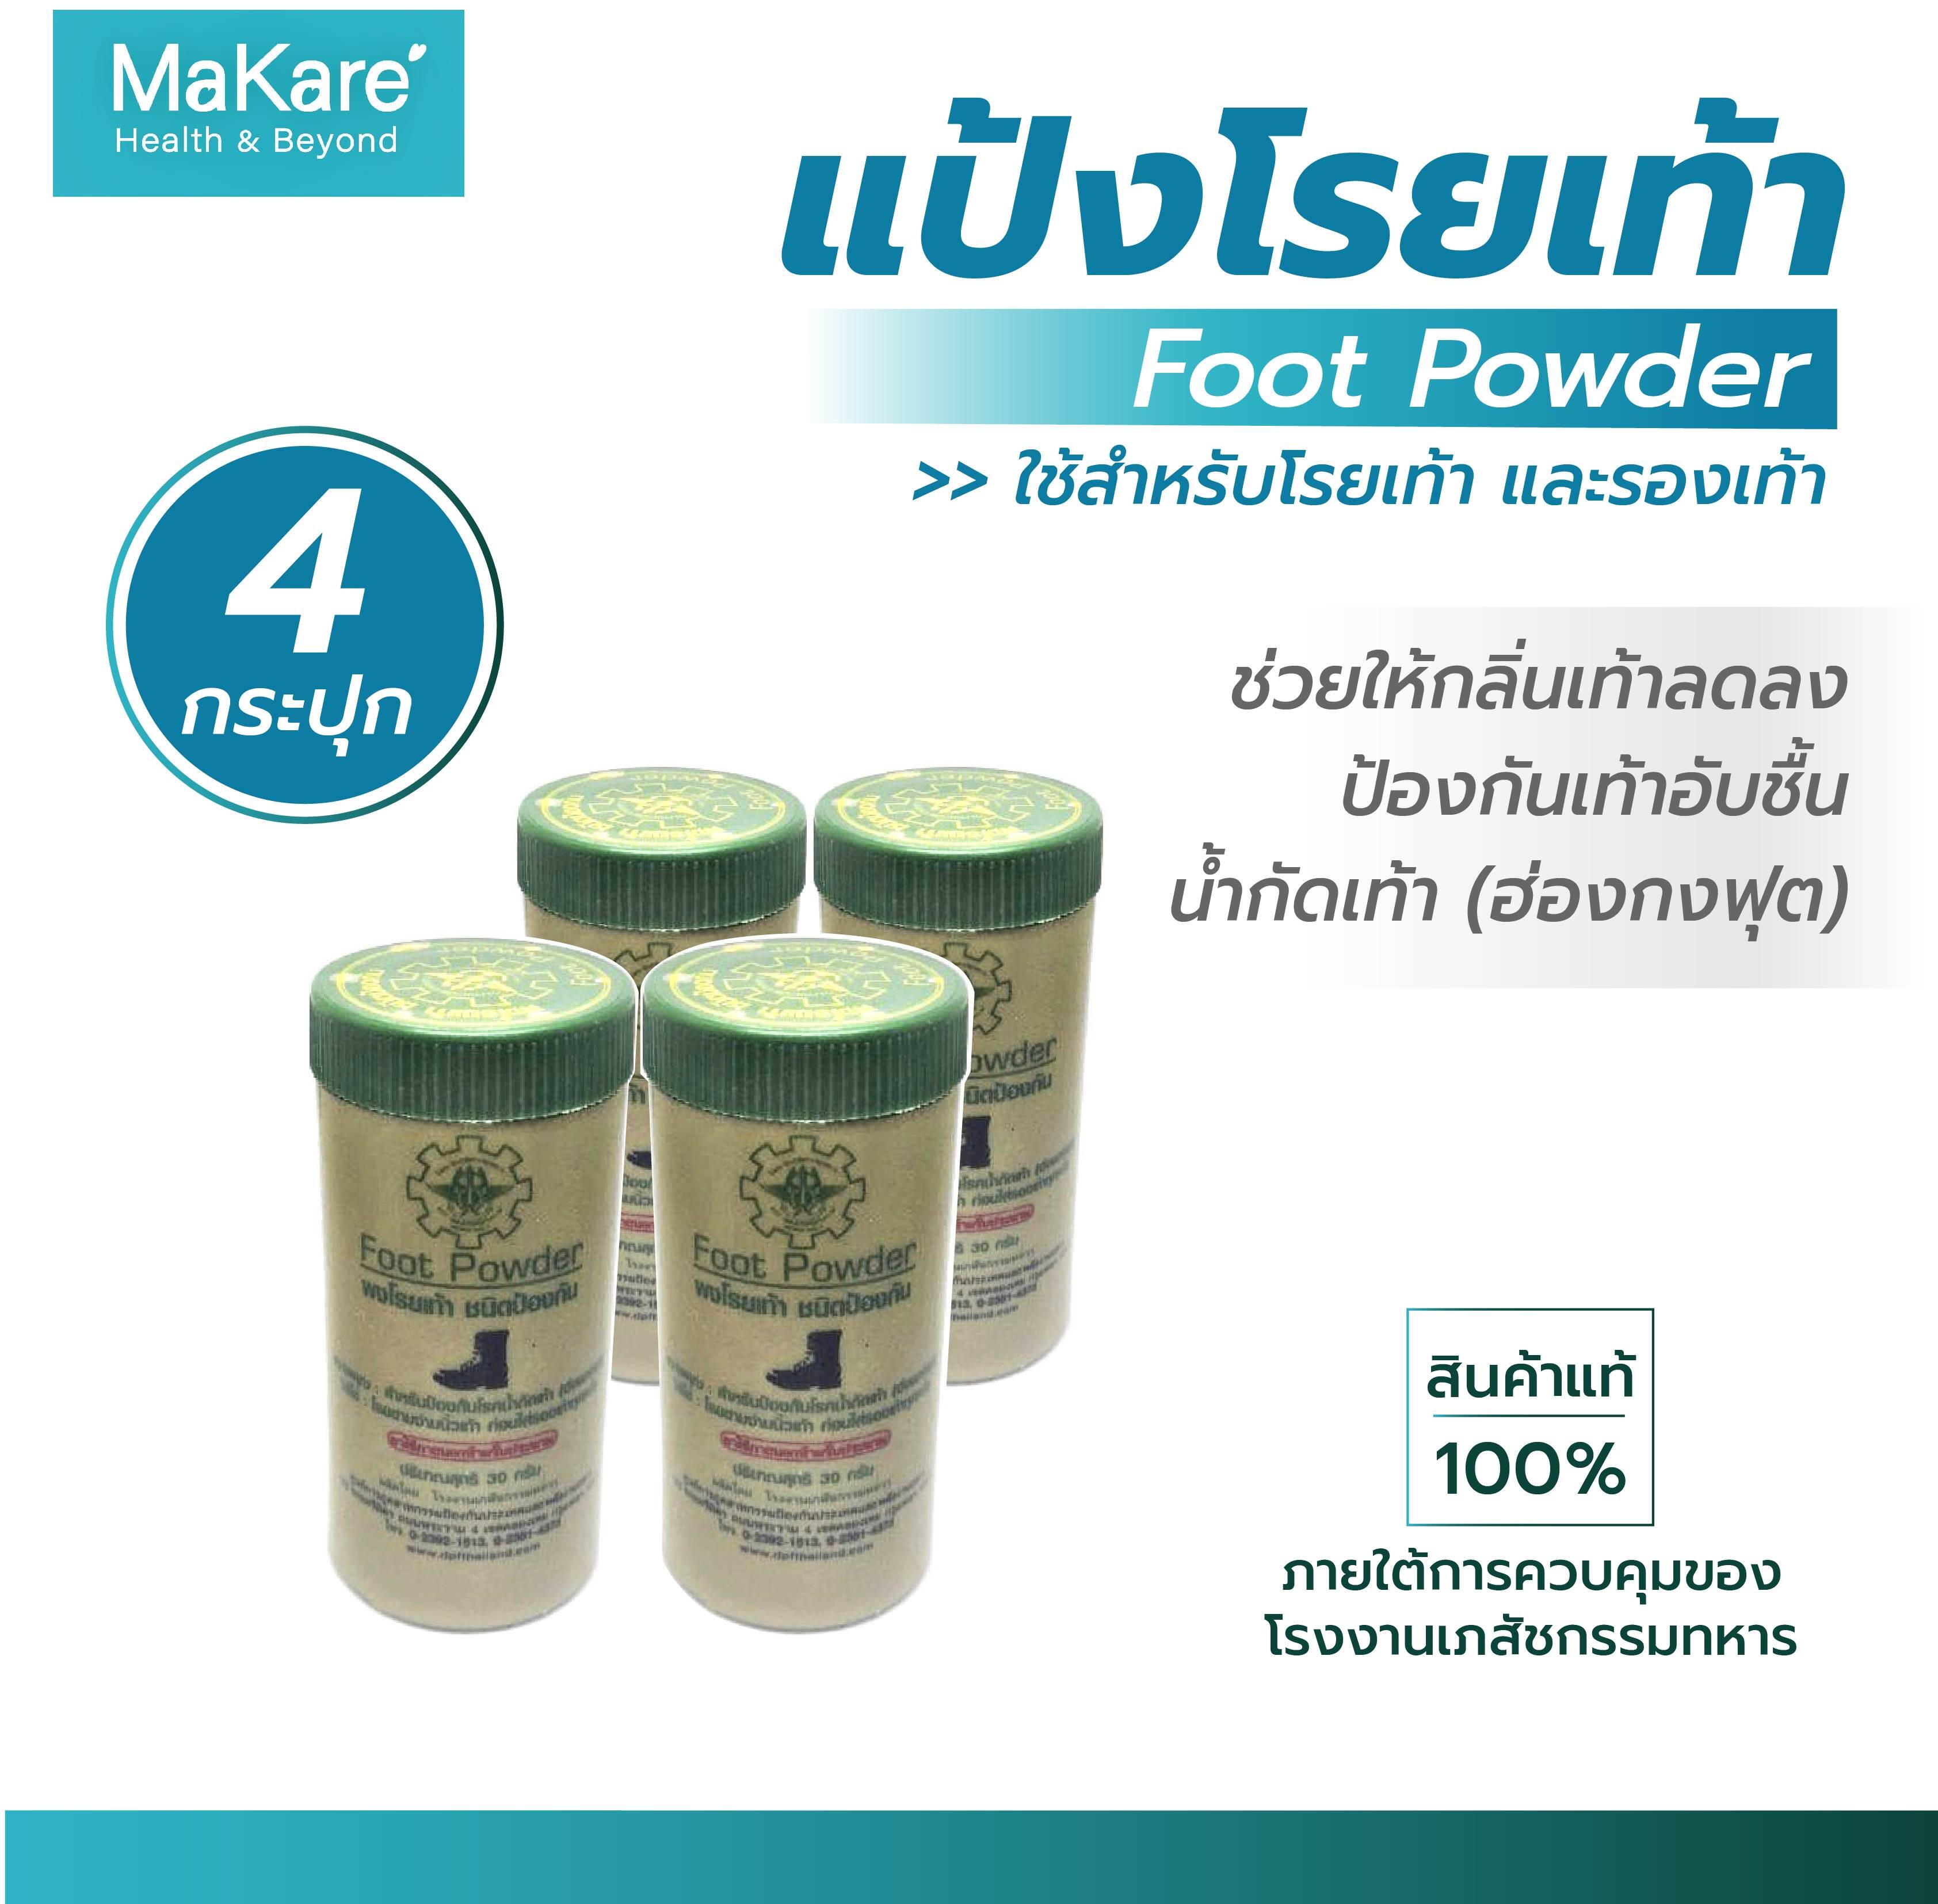 แป้งโรยเท้า Foot Powder บรรเทาอาการคัน ลดกลิ่นอับชื้น ป้องกันเท้าอับชื้น น้ำกัดเท้า (ฮ่องกงฟุต) ผงโรยเท้าทหาร ขนาด 30 กรัม จำนวน 4 กระปุก